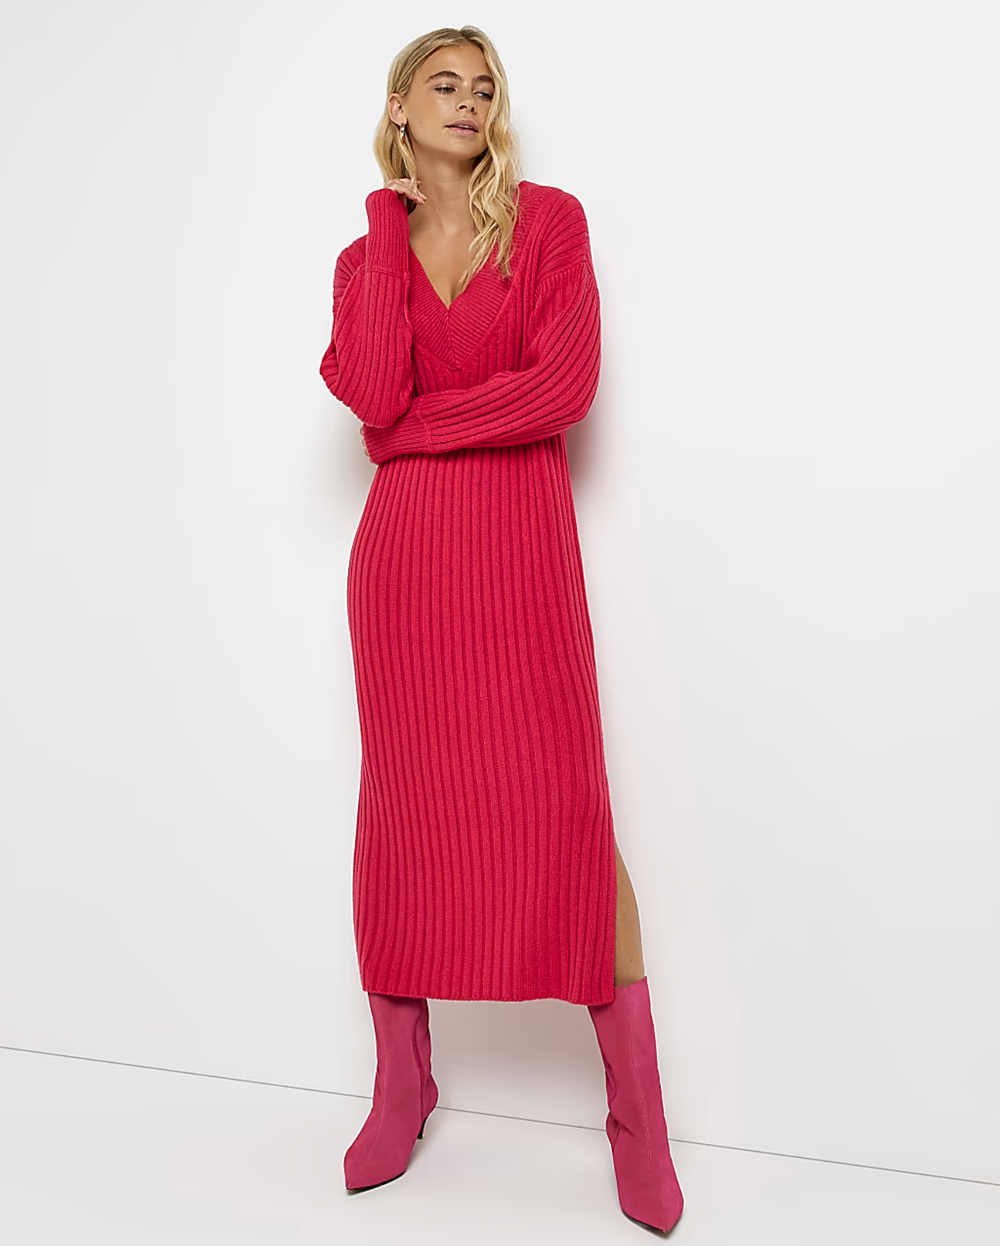 bold pink knit dress.png